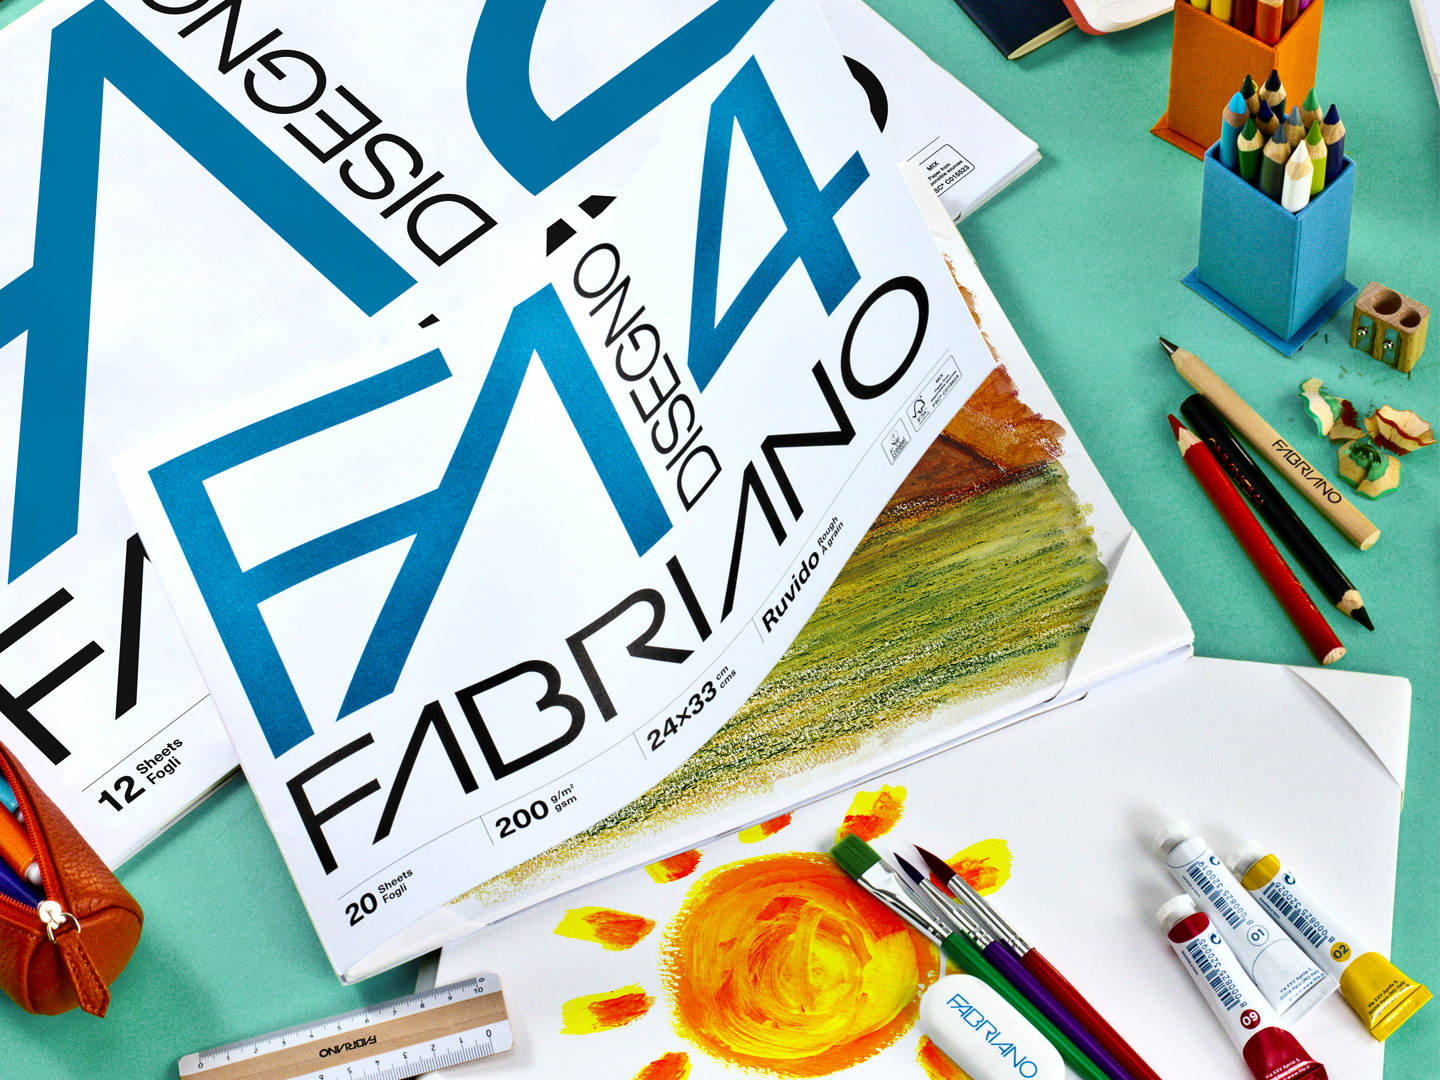 Album Fabriano F4